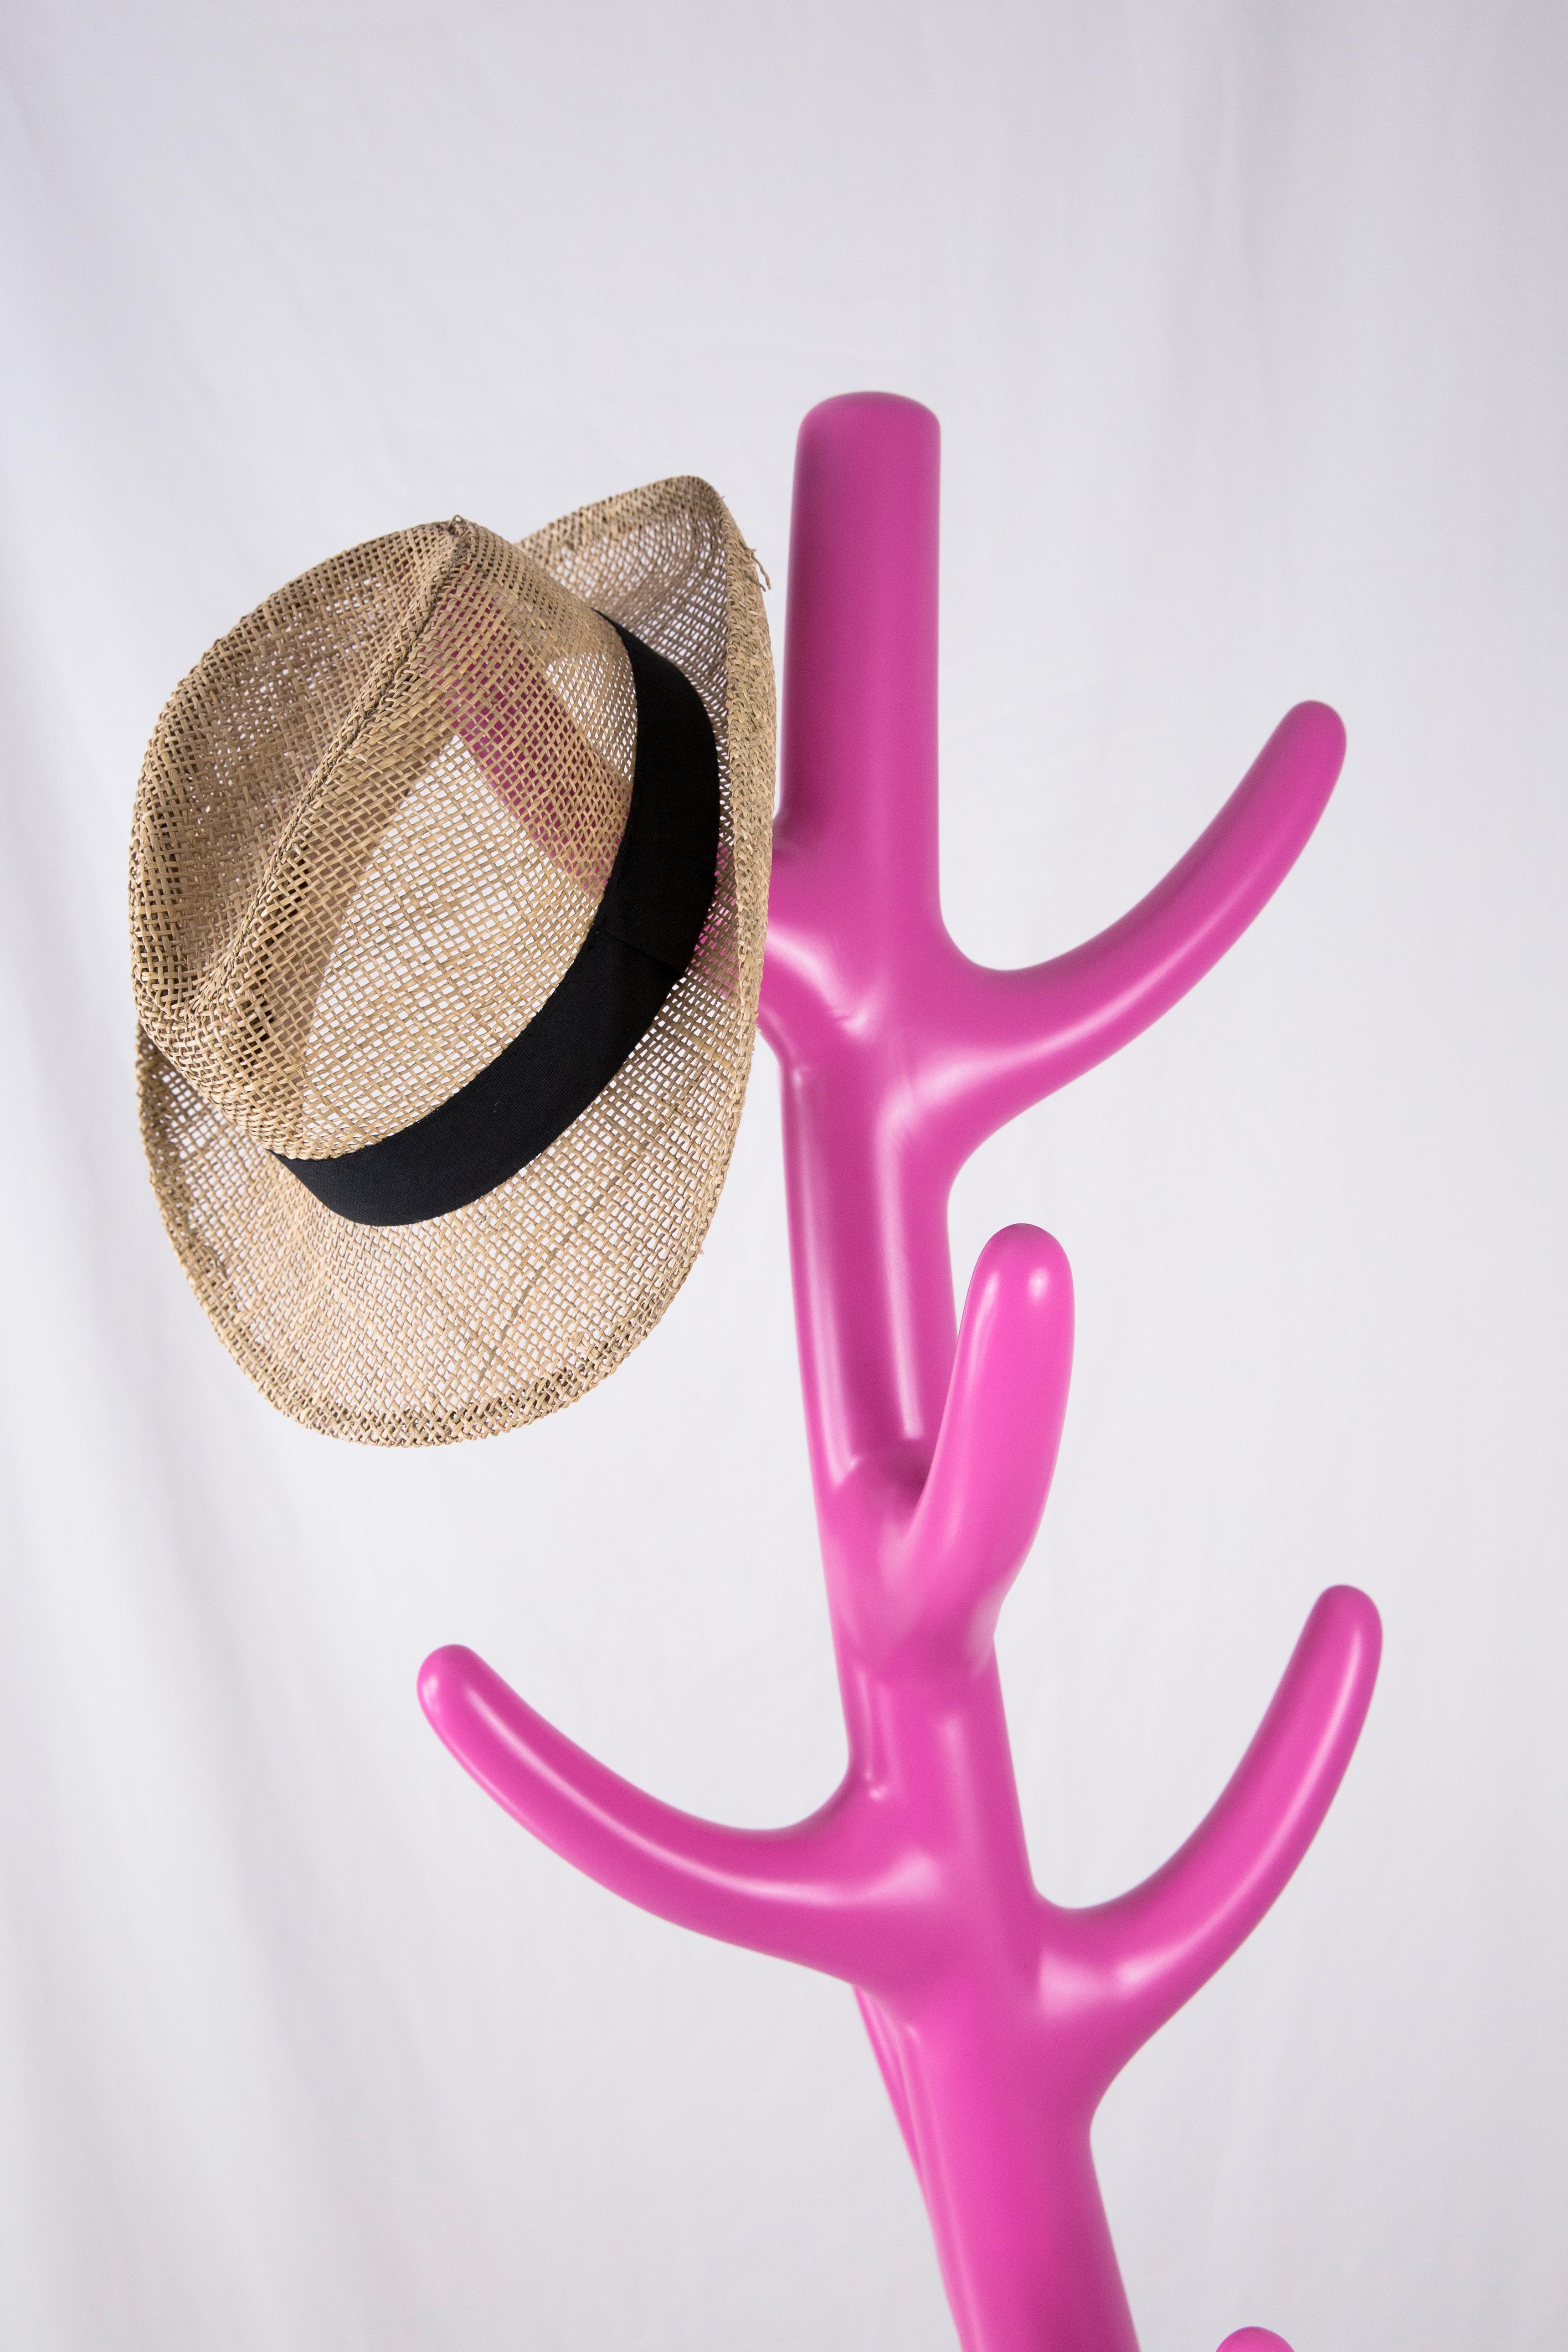 Post-Modern Crooked Coat Rack: Vibrant Pink Sculptural Artistic Hanger For Sale